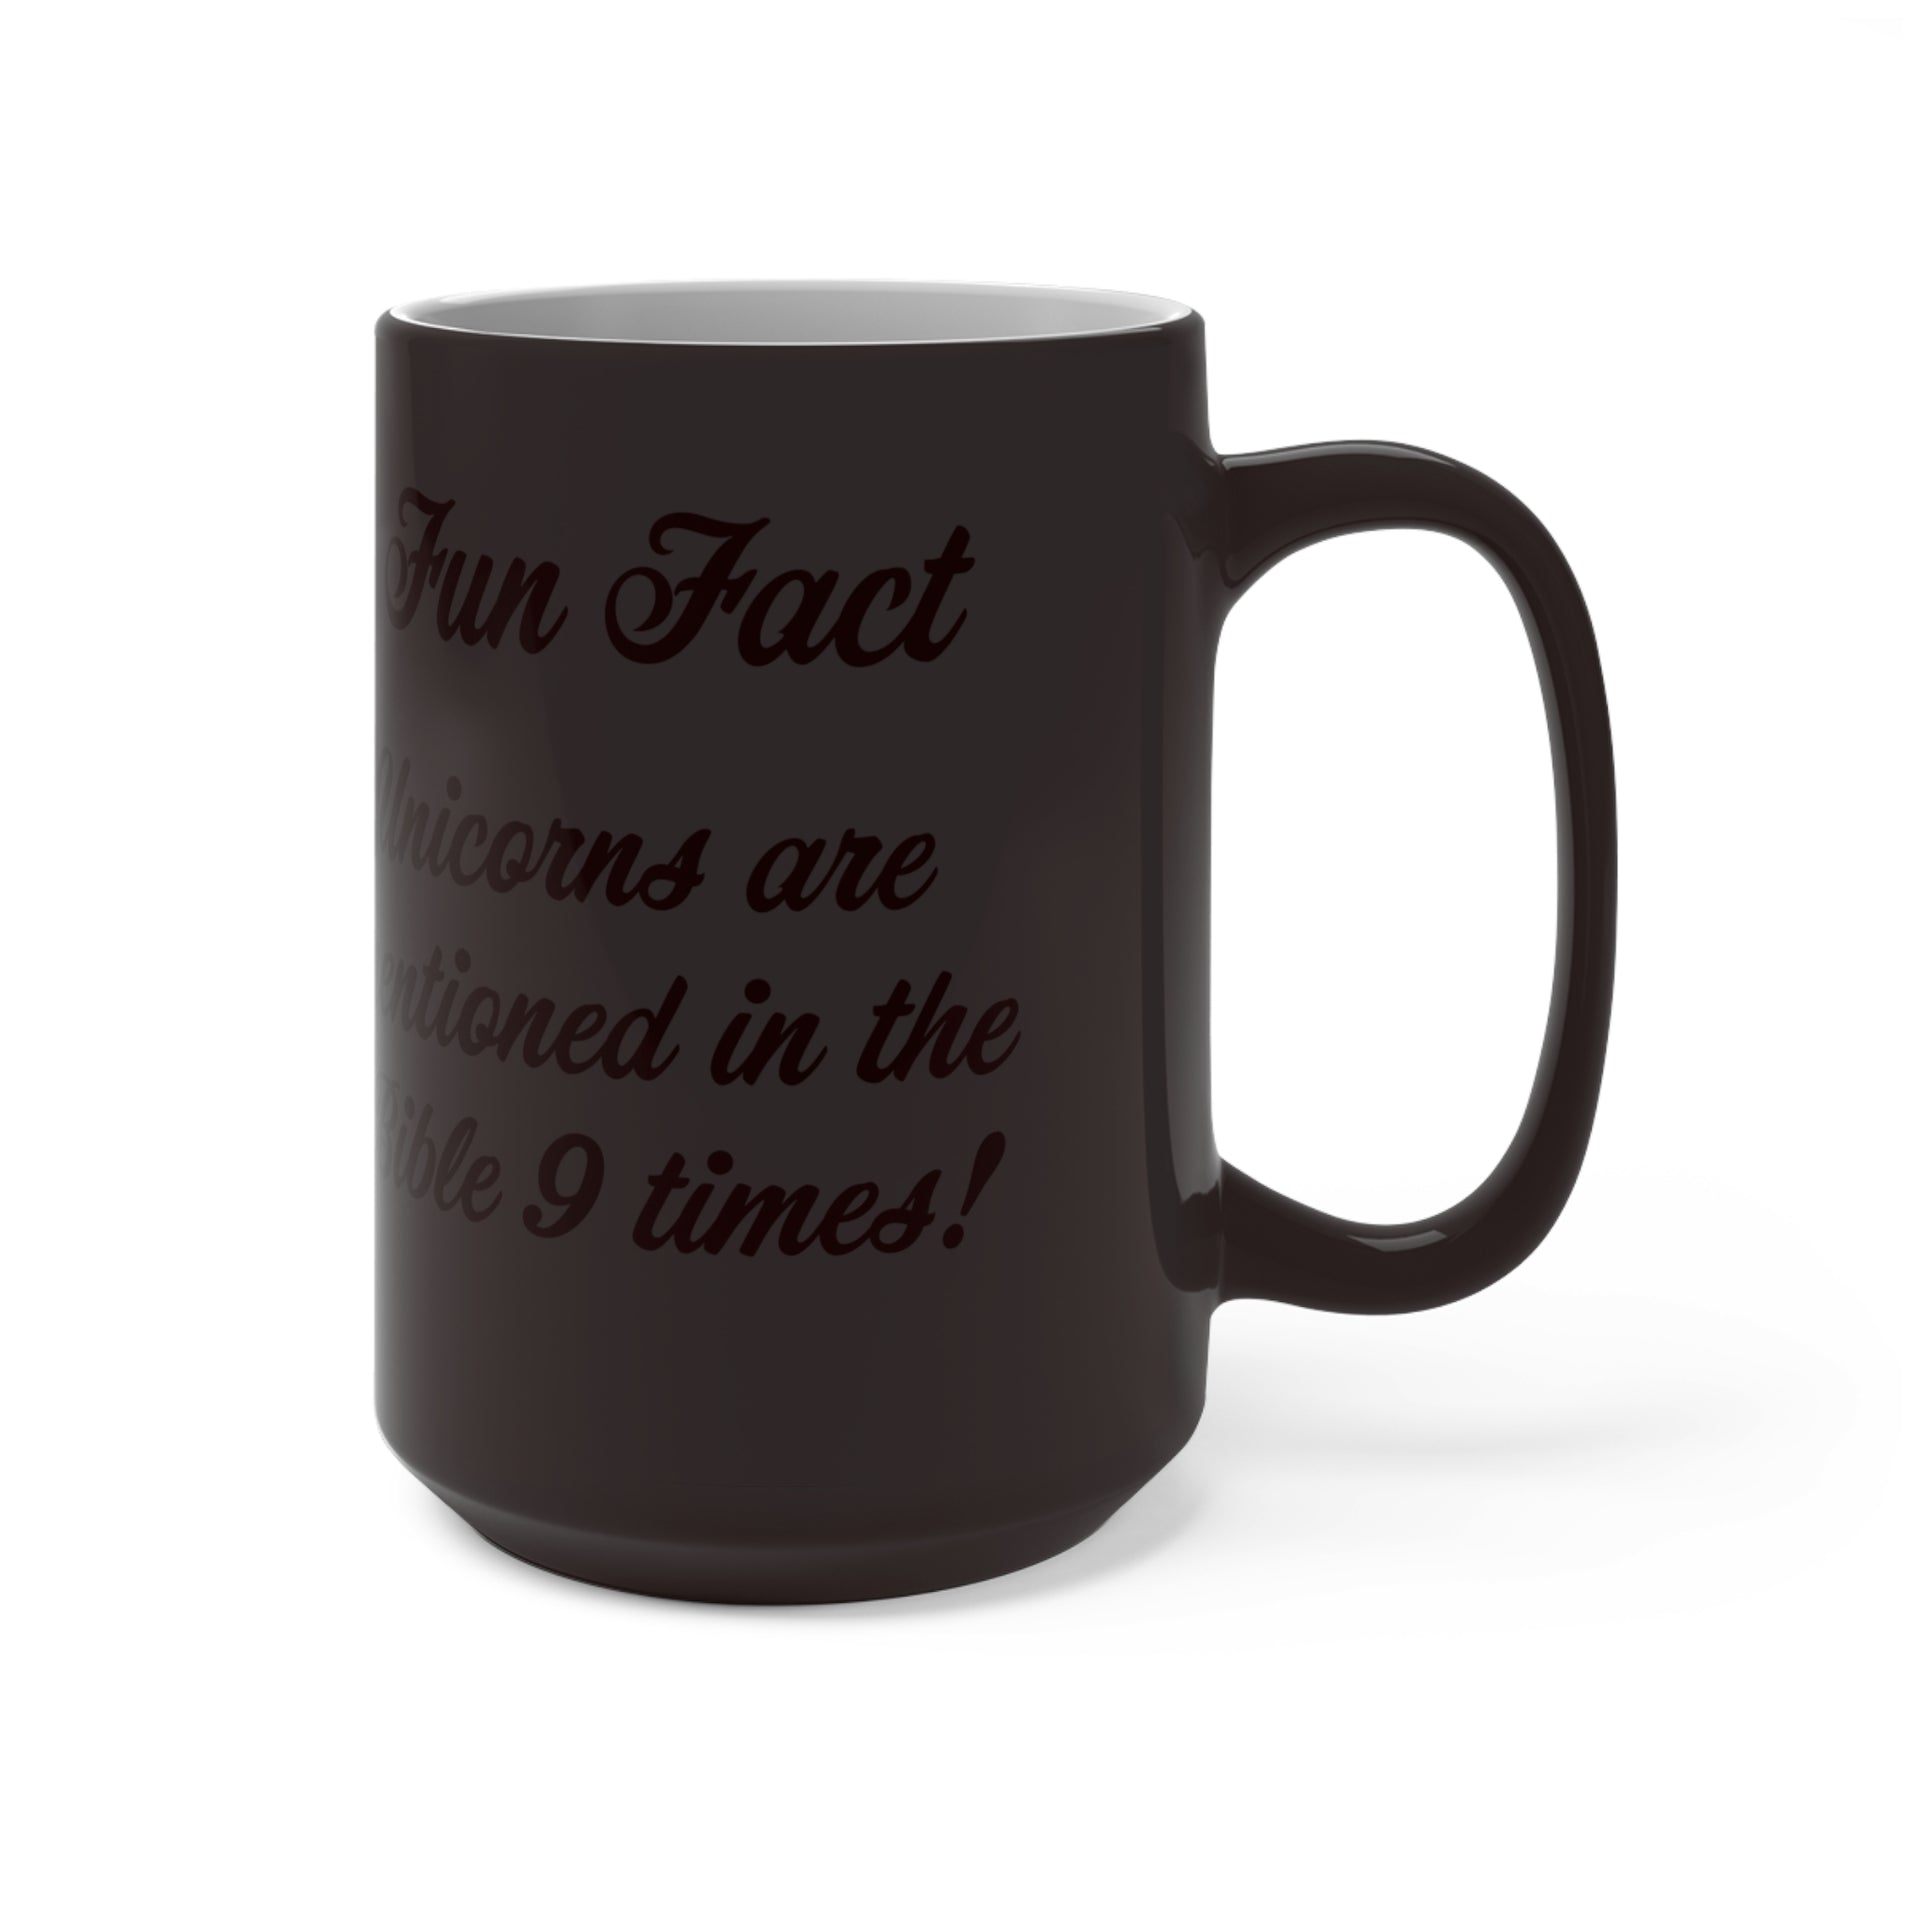 Fun Fact - Unicorns